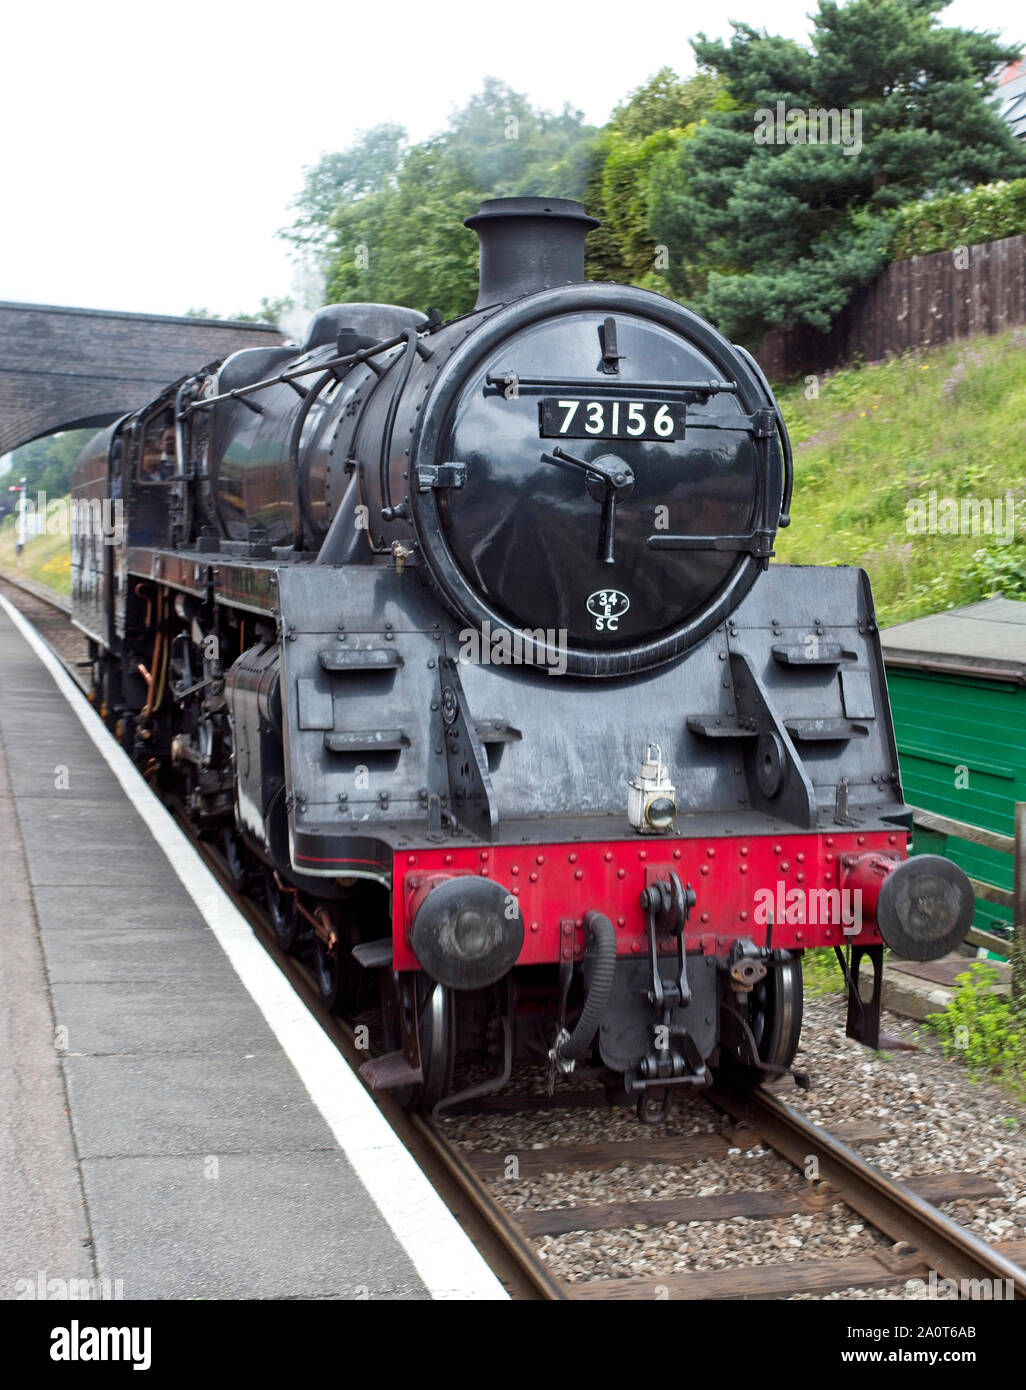 73156, une classe standard BR 5 locomotive vapeur debout à la plate-forme edge à Quorn gare de la Great Central Railway, Leicestershire, England, UK Banque D'Images